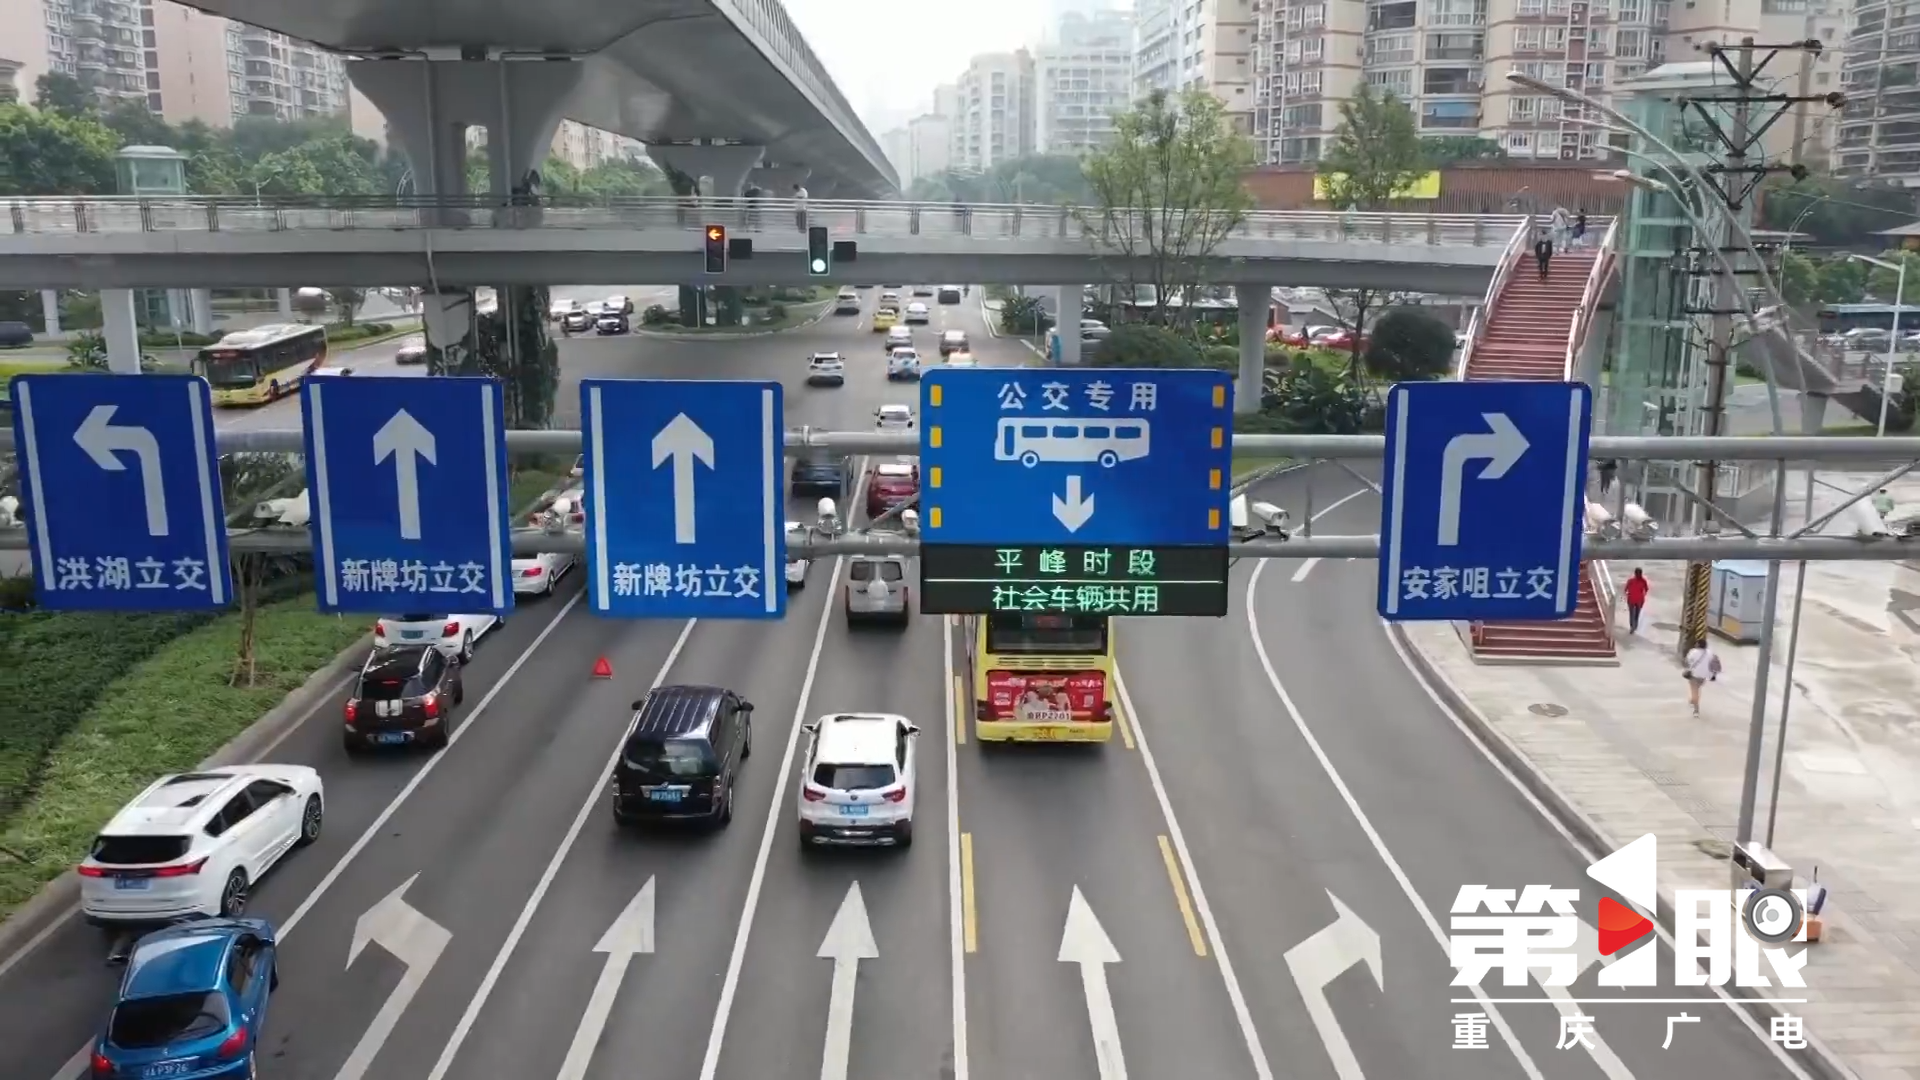 驾驶员请注意：除夕重庆中心城区仍限号限行！2